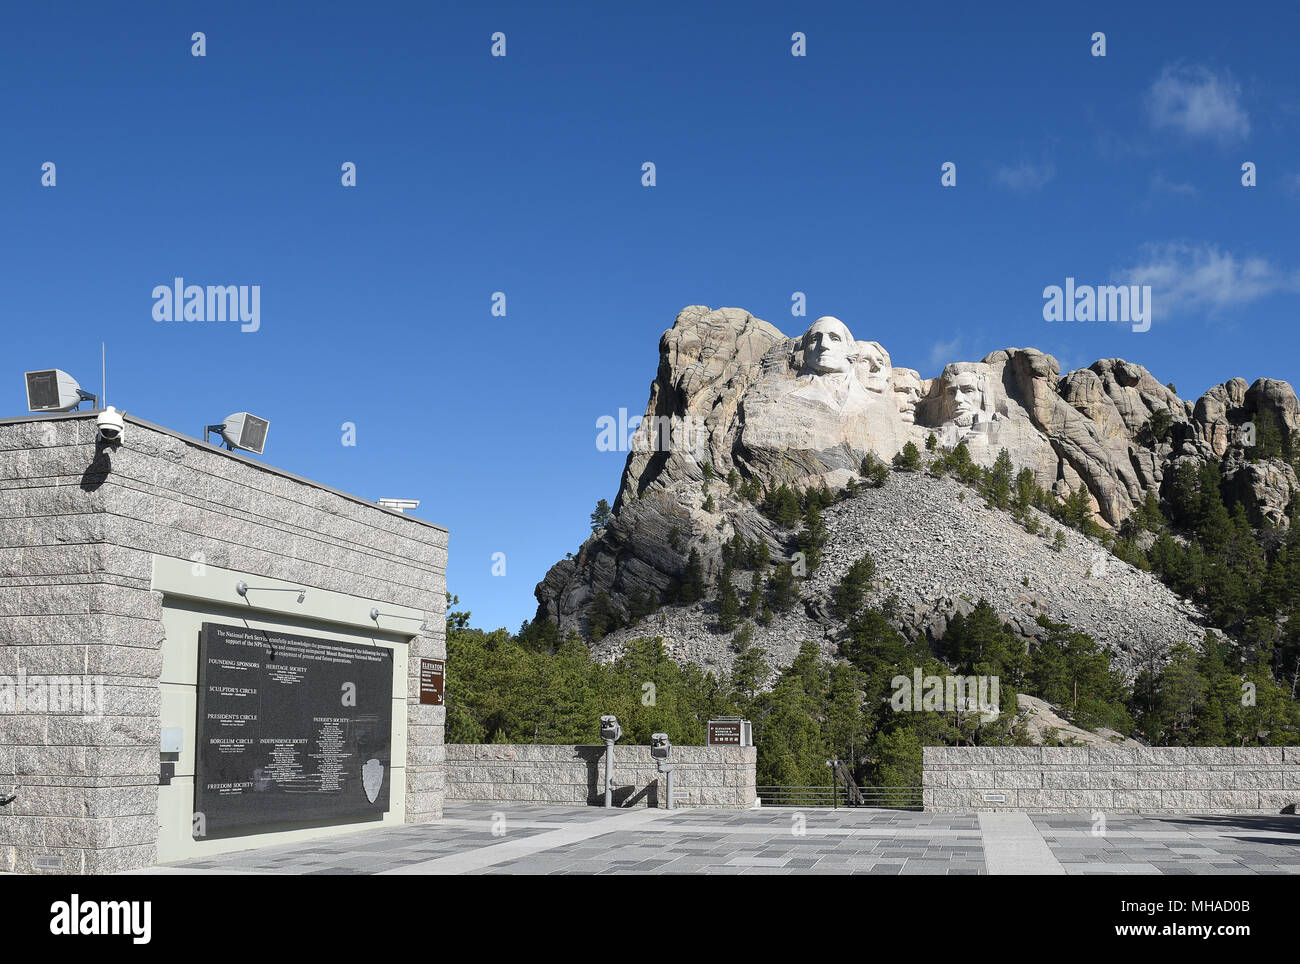 Grand View Terrace à Mount Rushmore National Memorial, une sculpture massive sculptée dans le Mont Rushmore dans les Black Hills du Dakota du Sud de la région. Banque D'Images